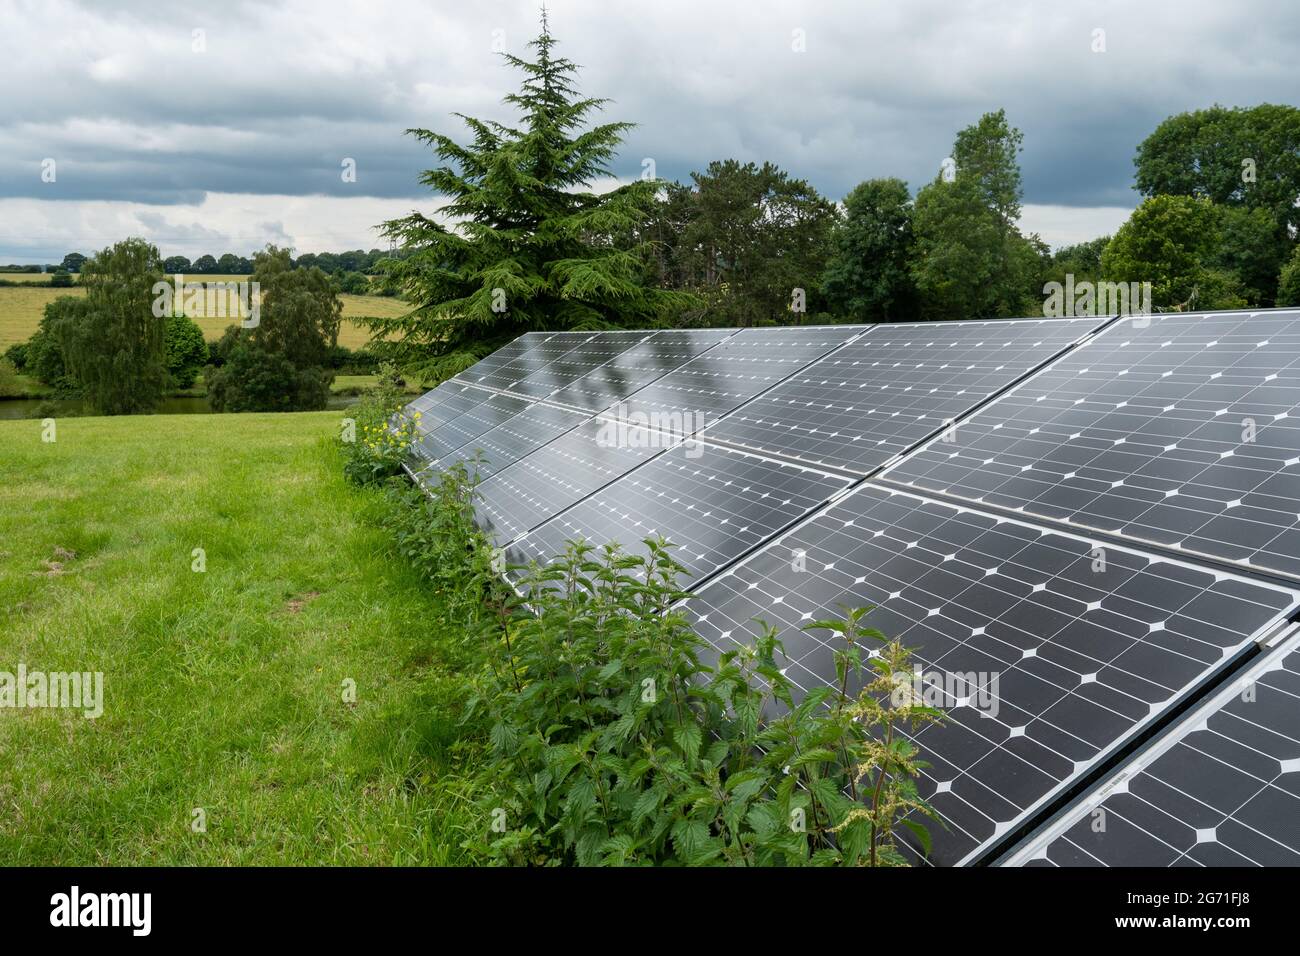 Panneaux d'énergie solaire dans un champ dans la campagne du Royaume-Uni pour produire de l'électricité renouvelable à partir de la lumière du soleil Banque D'Images